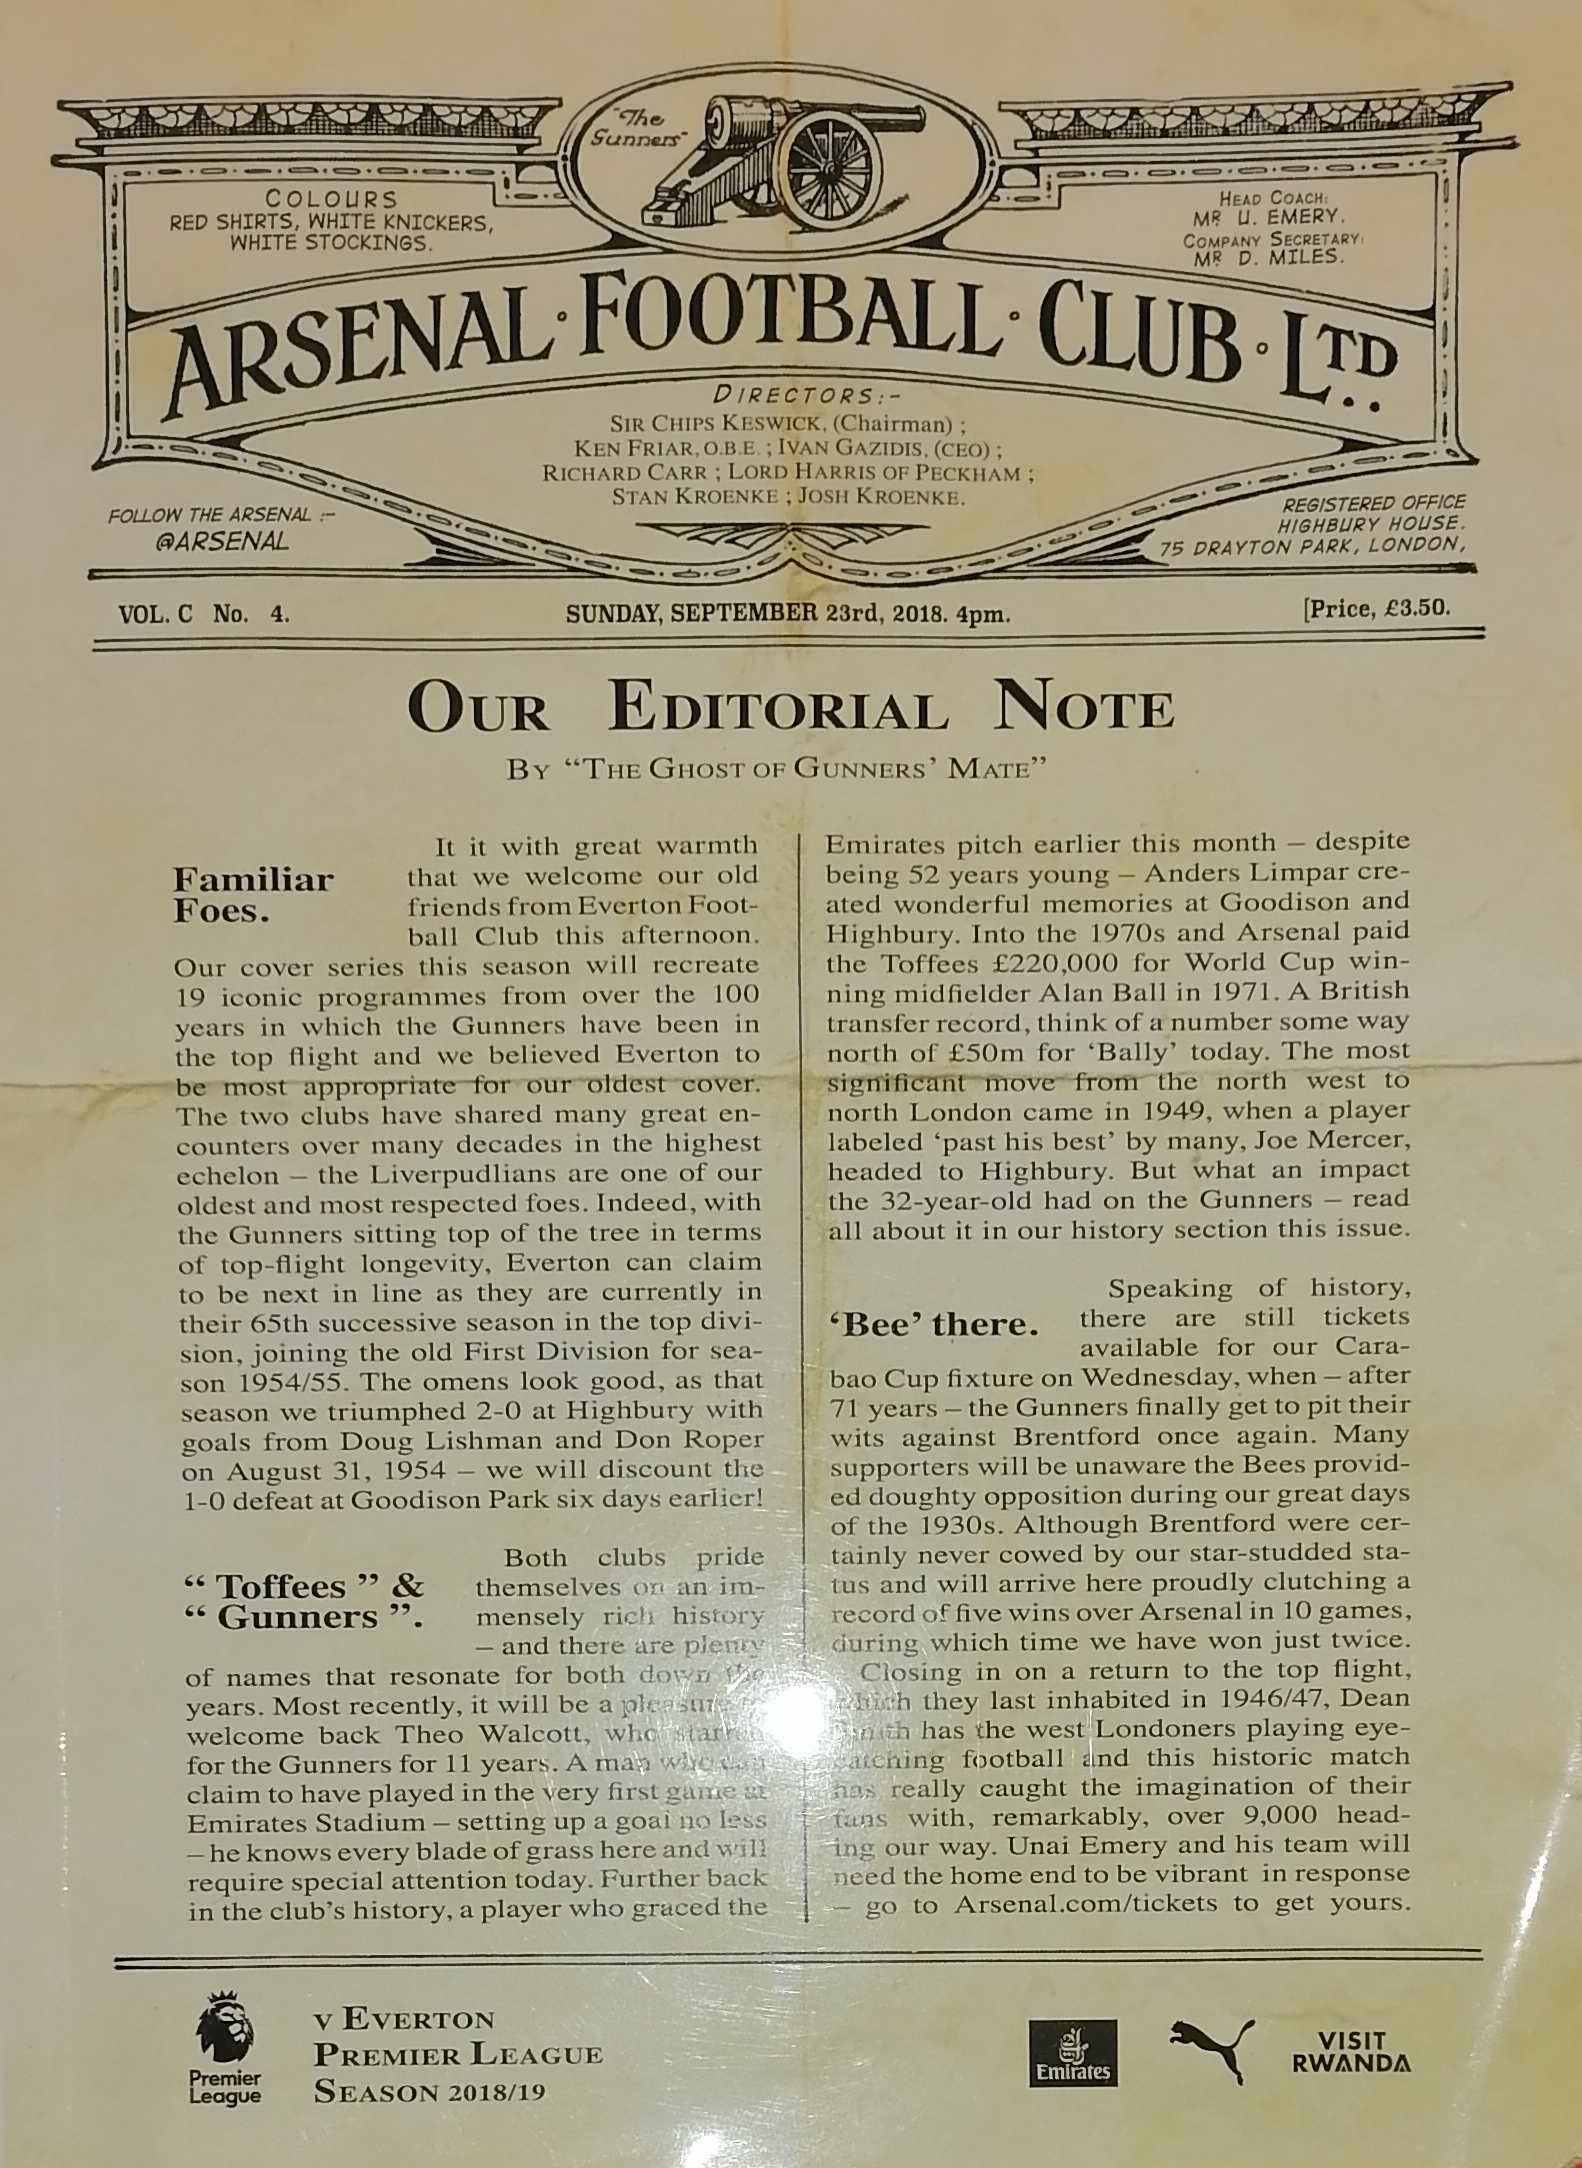 Arsenal Football Club Ltd